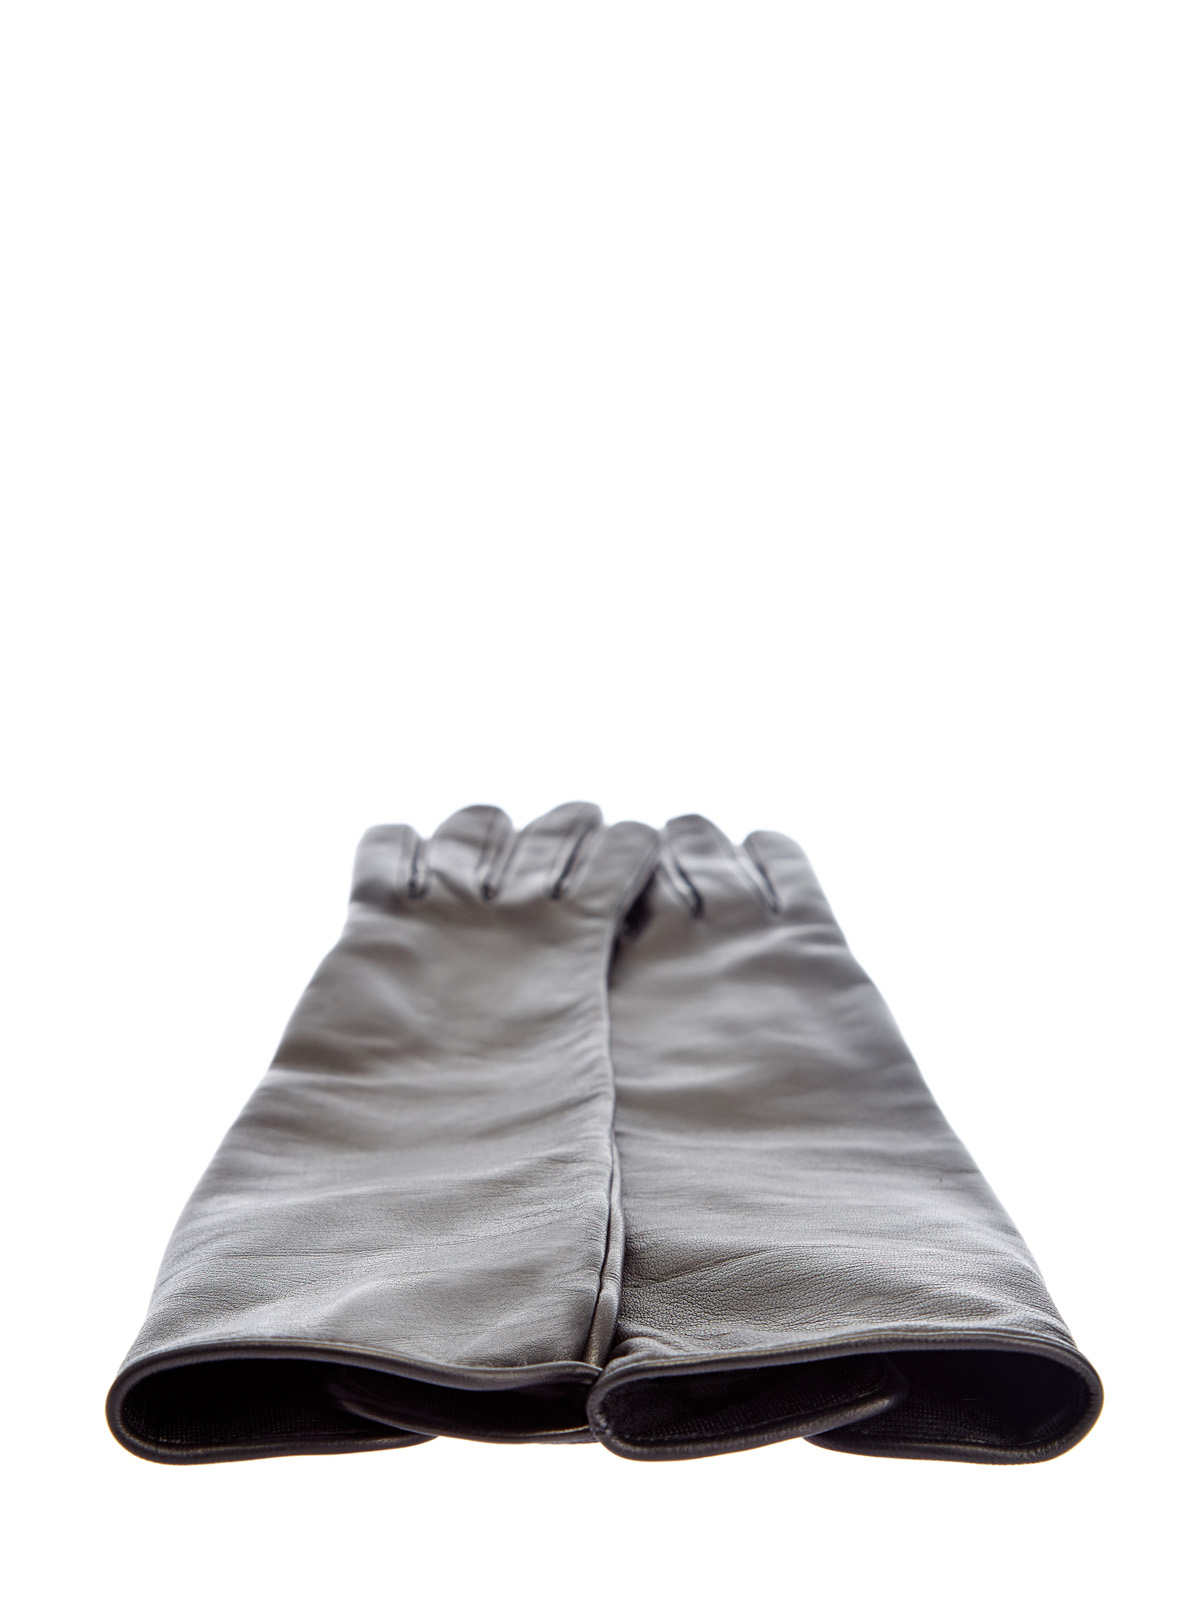 Высокие перчатки из кожи ягненка с кашемировой подкладкой BURBERRY, цвет черный, размер XS;S;M - фото 4